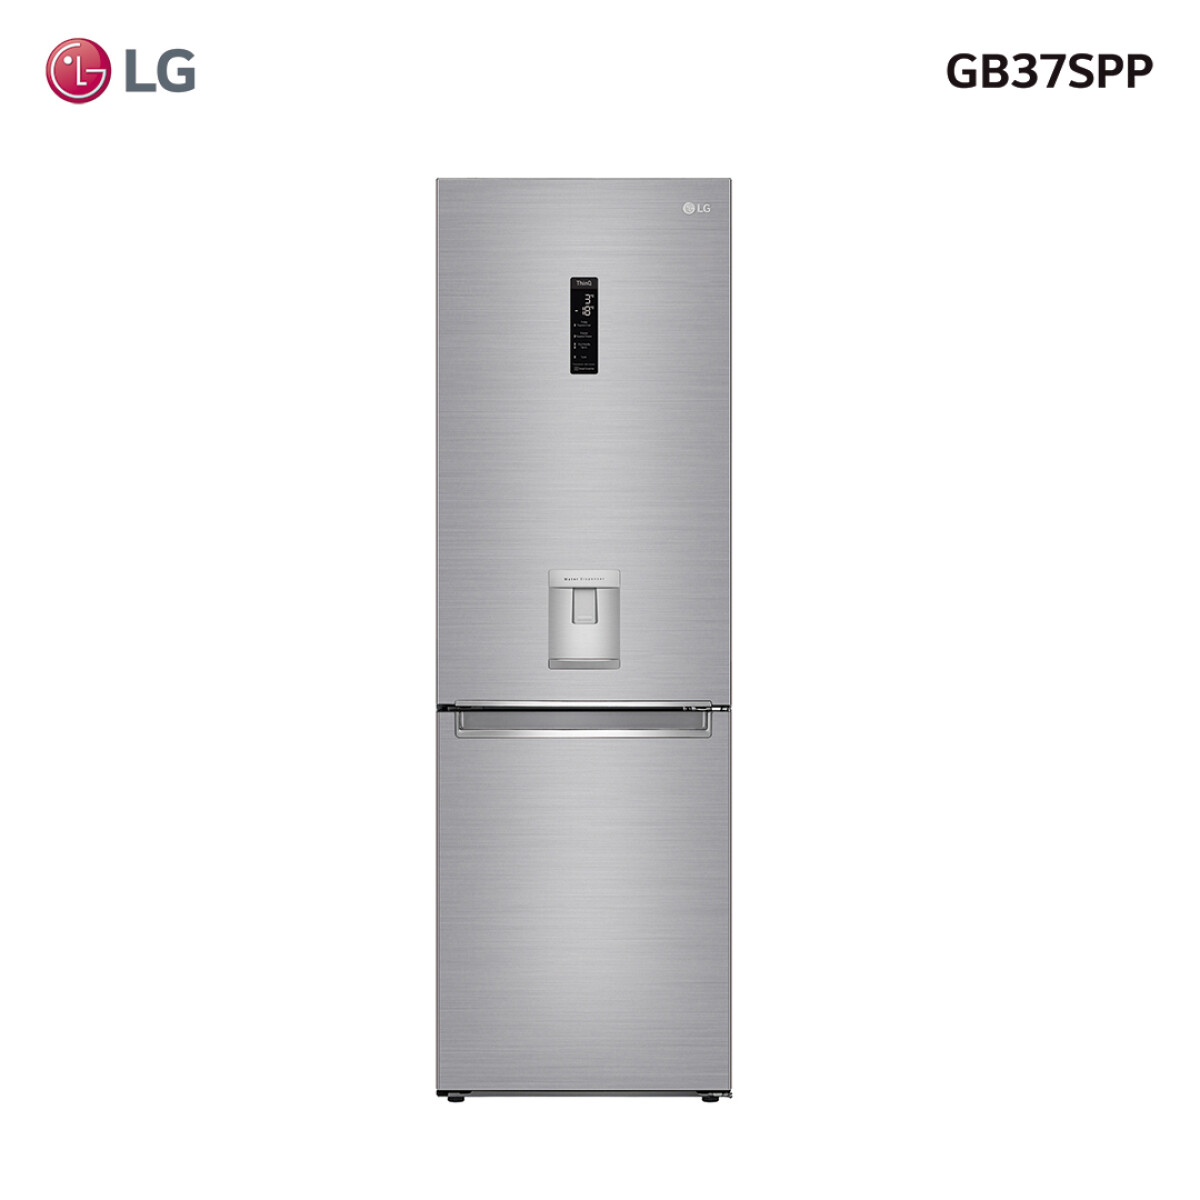 Refrigerador inverter 373L GB37SPP LG 